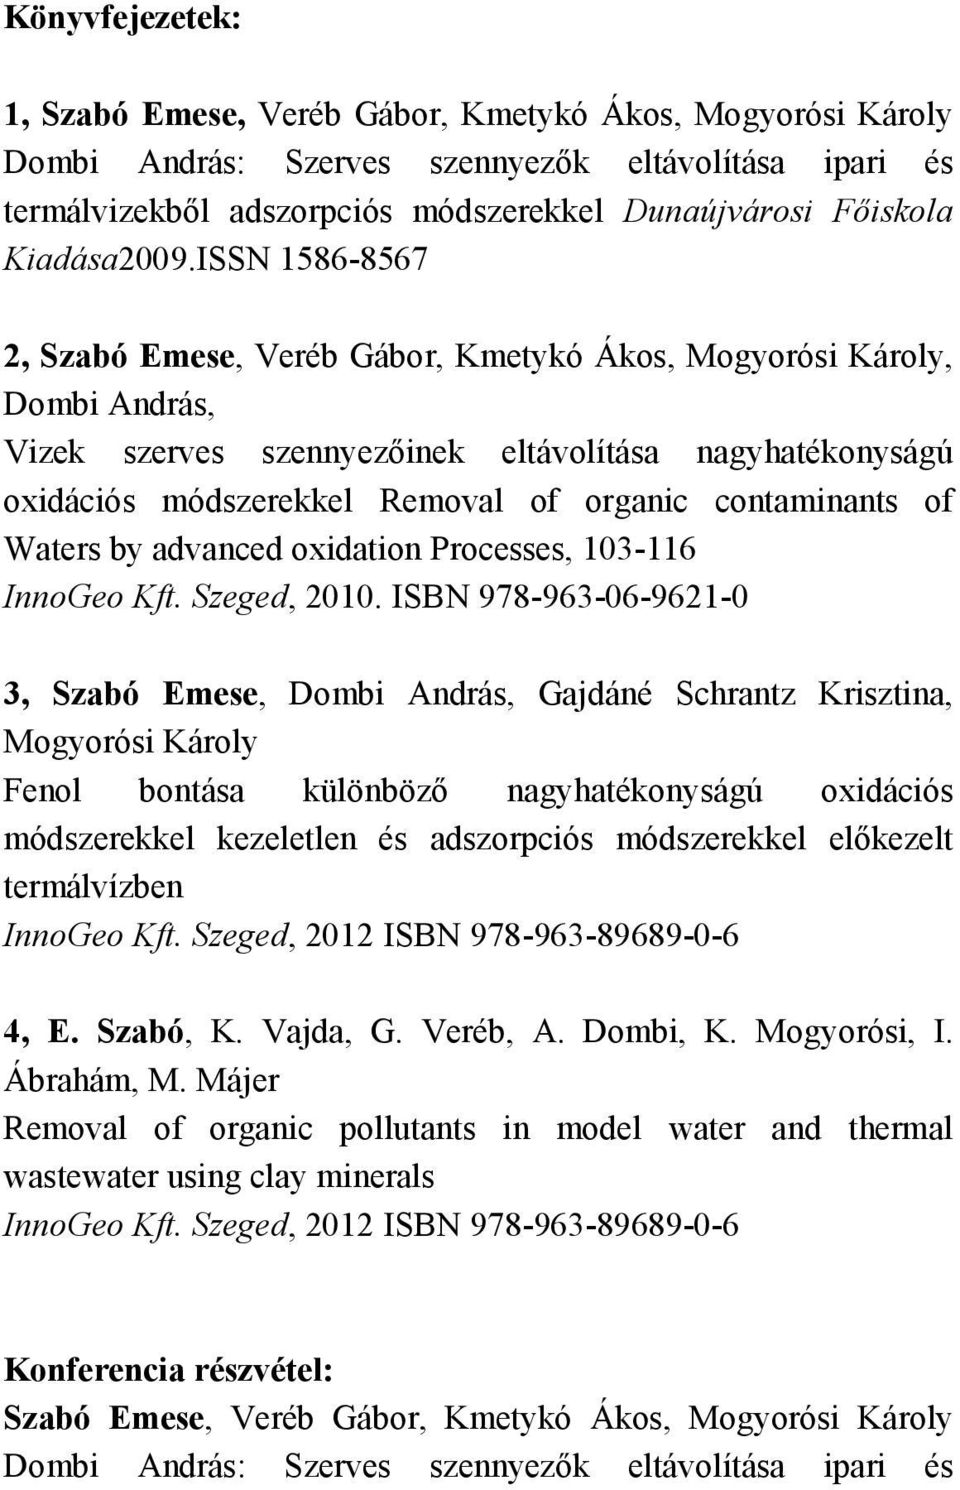 ISSN 1586-8567 2, Szabó Emese, Veréb Gábor, Kmetykó Ákos, Mogyorósi Károly, Dombi András, Vizek szerves szennyezőinek eltávolítása nagyhatékonyságú oxidációs módszerekkel Removal of organic